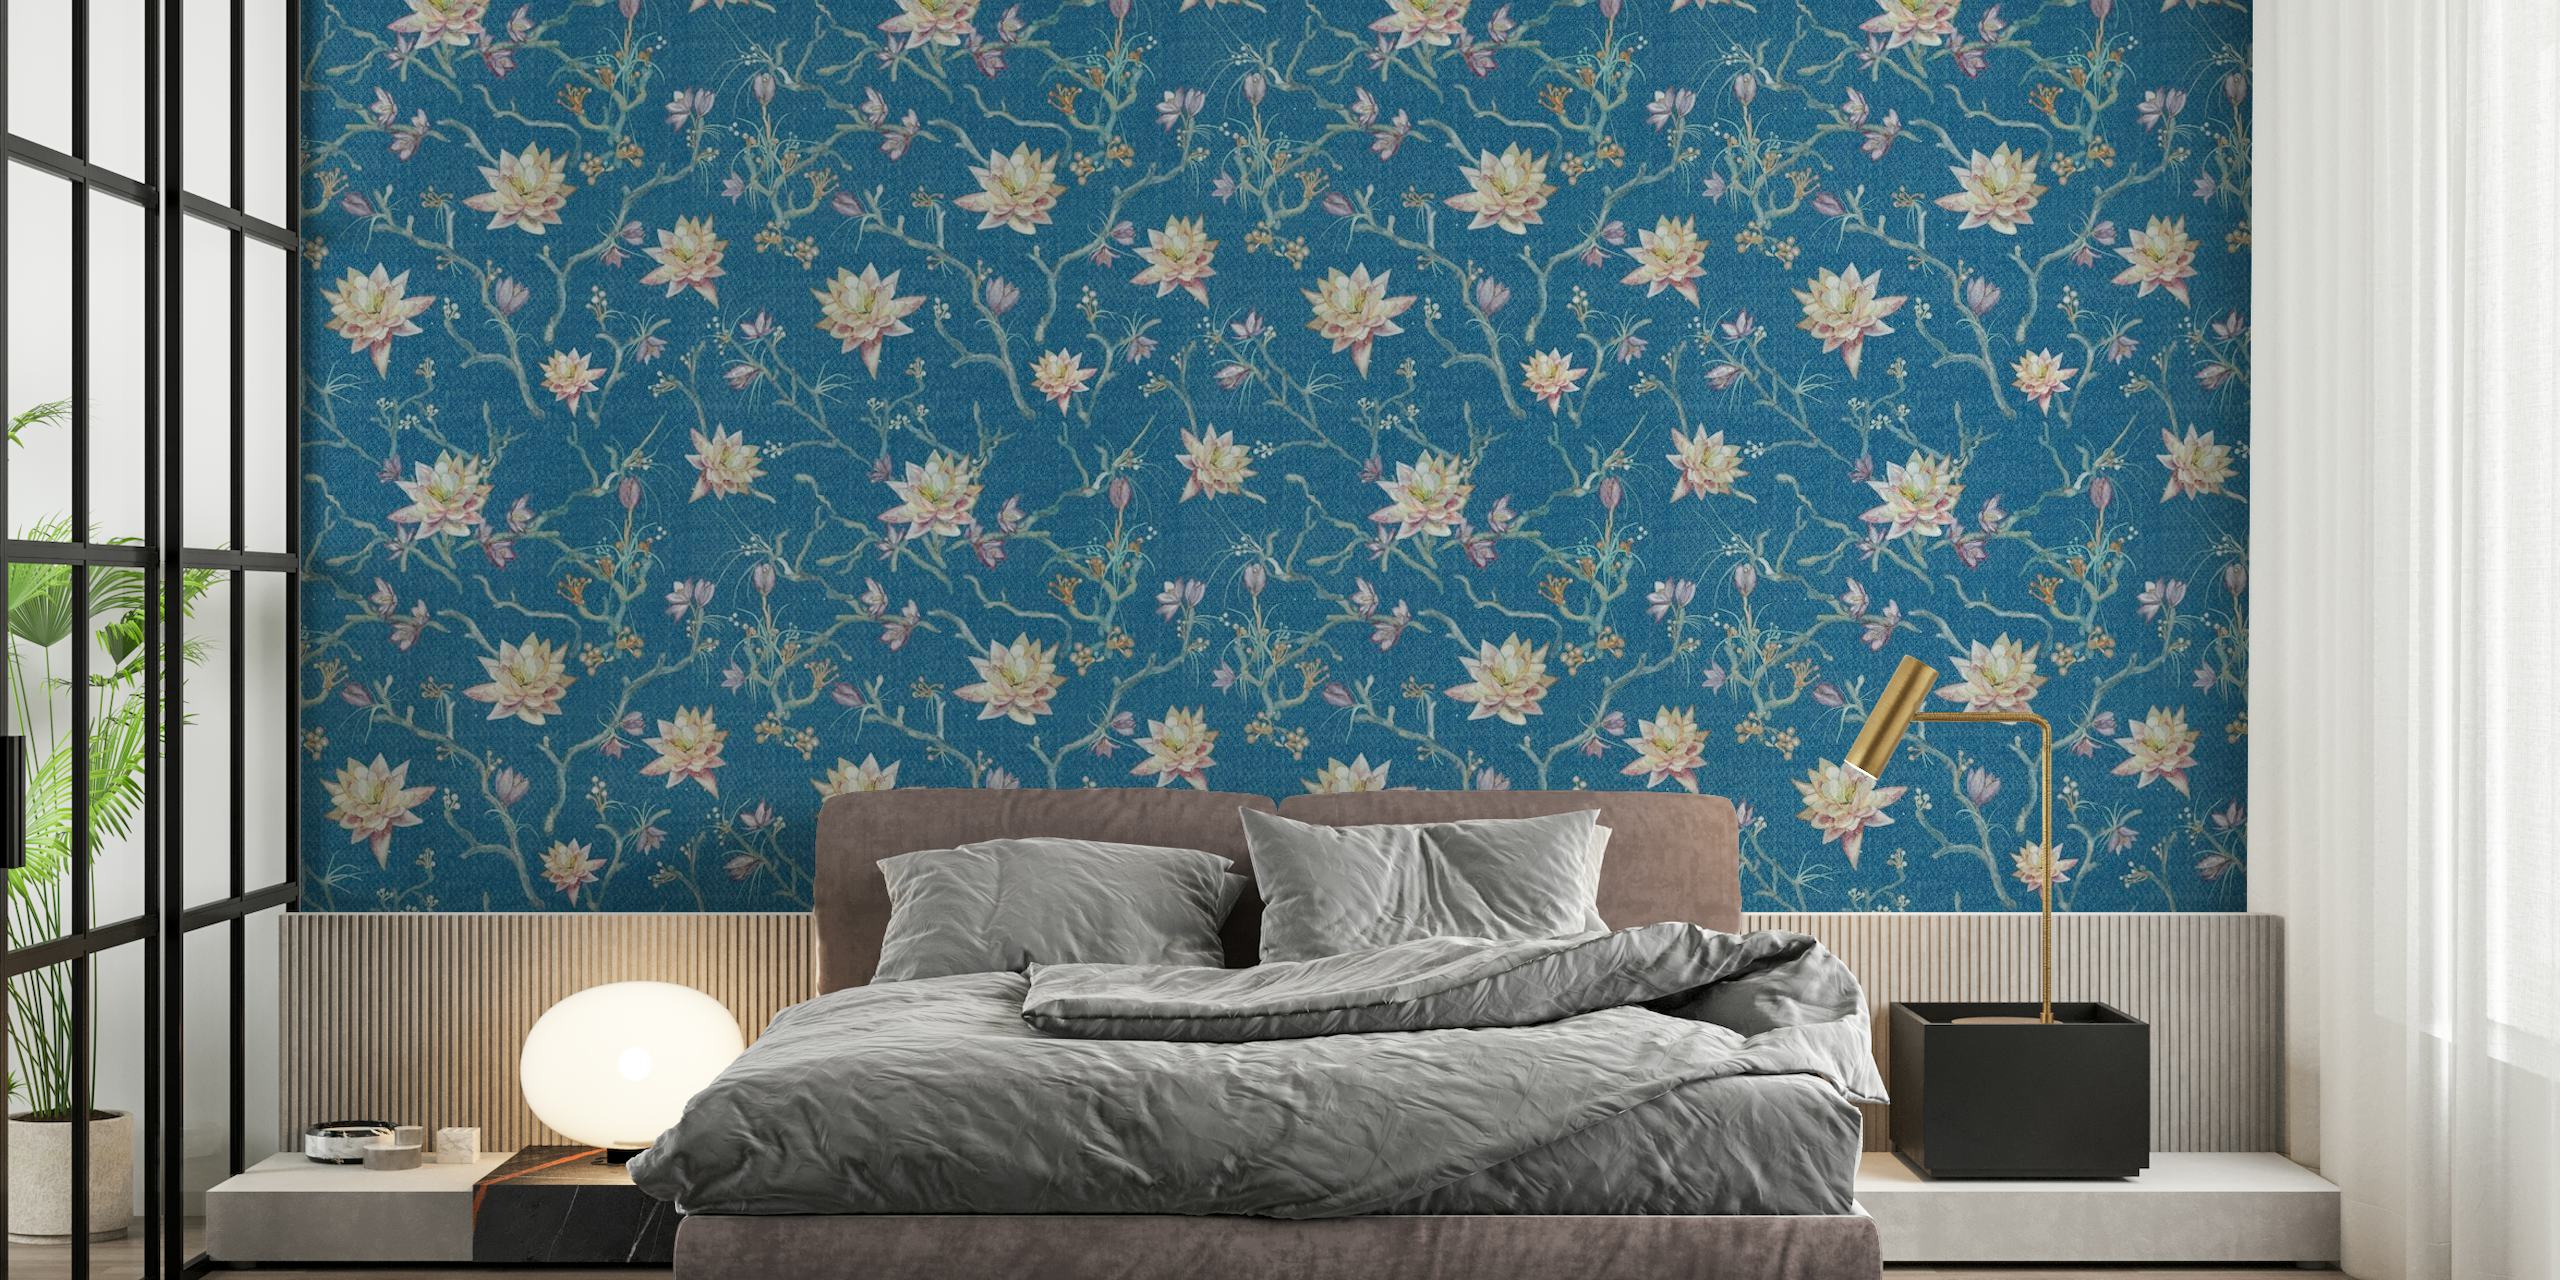 Proljetni lotos zidni mural s plavom pozadinom i bijelim cvjetovima lotosa